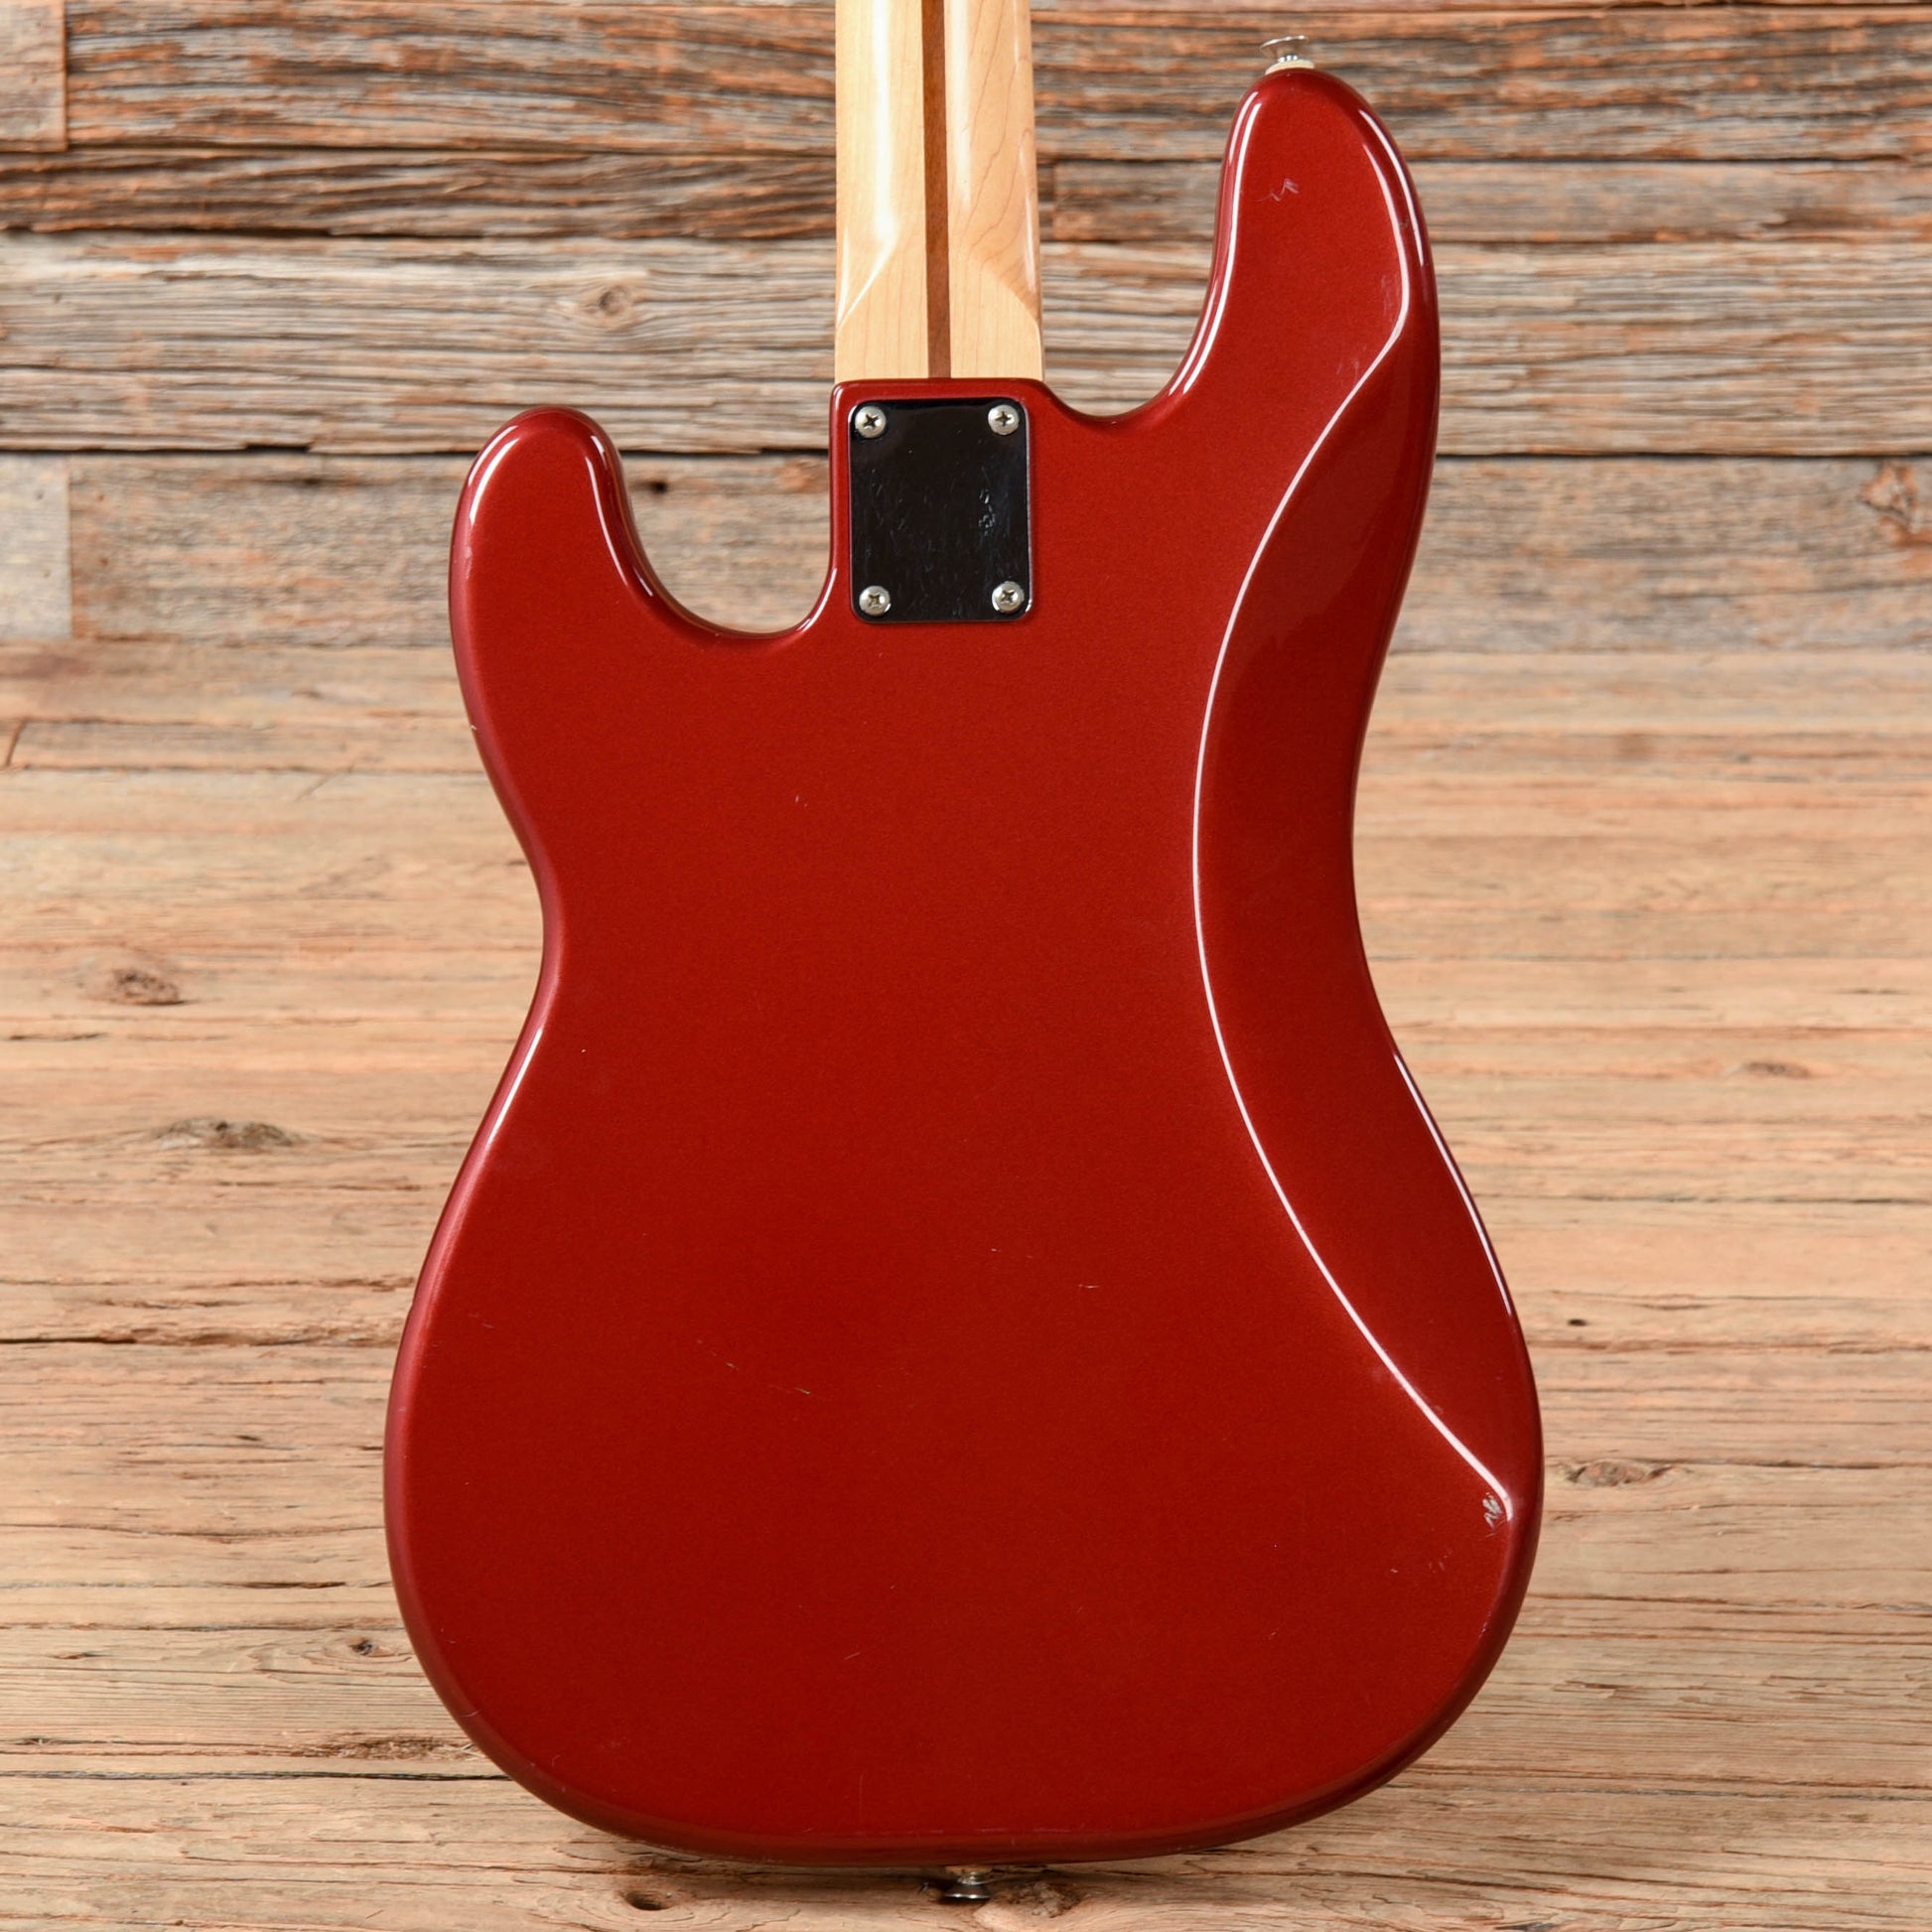 Fender Standard Precision Bass Red 1993 Bass Guitars / 4-String